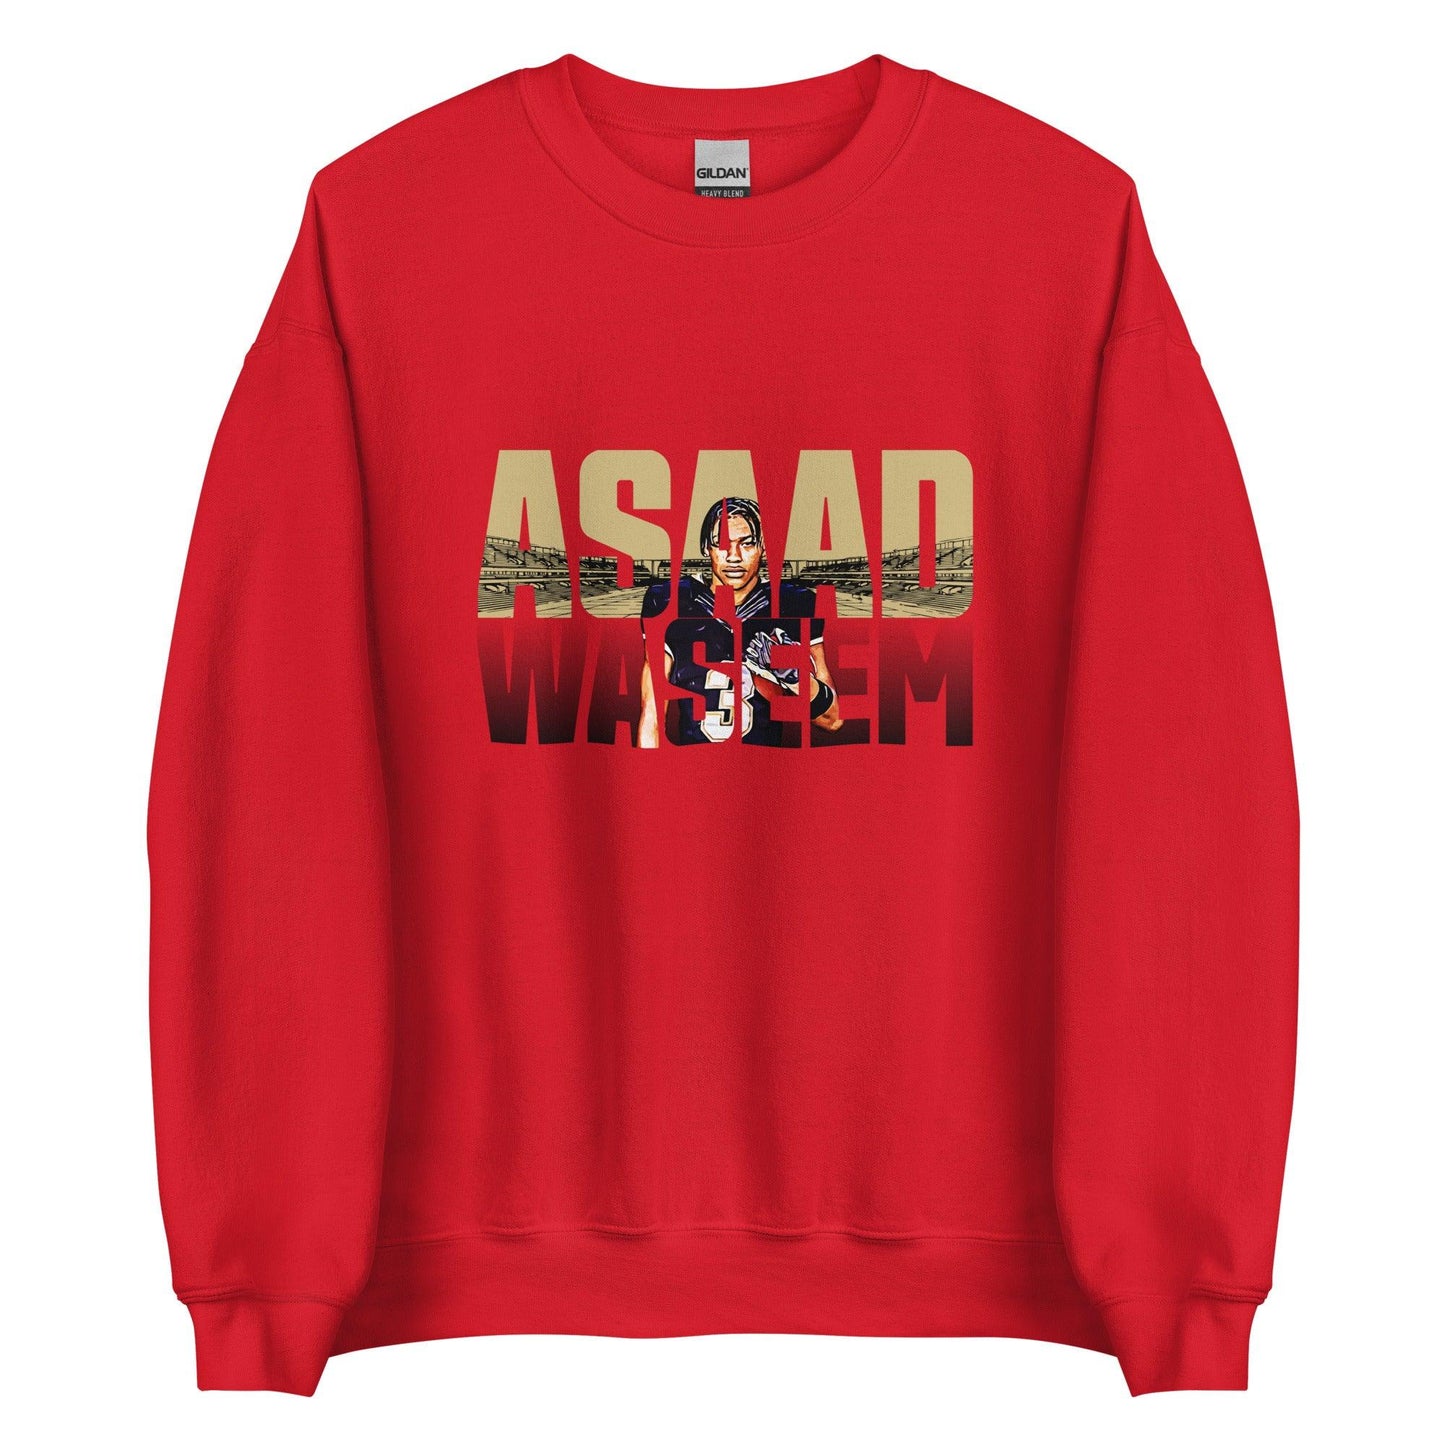 Asaad Waseem "Gameday" Sweatshirt - Fan Arch